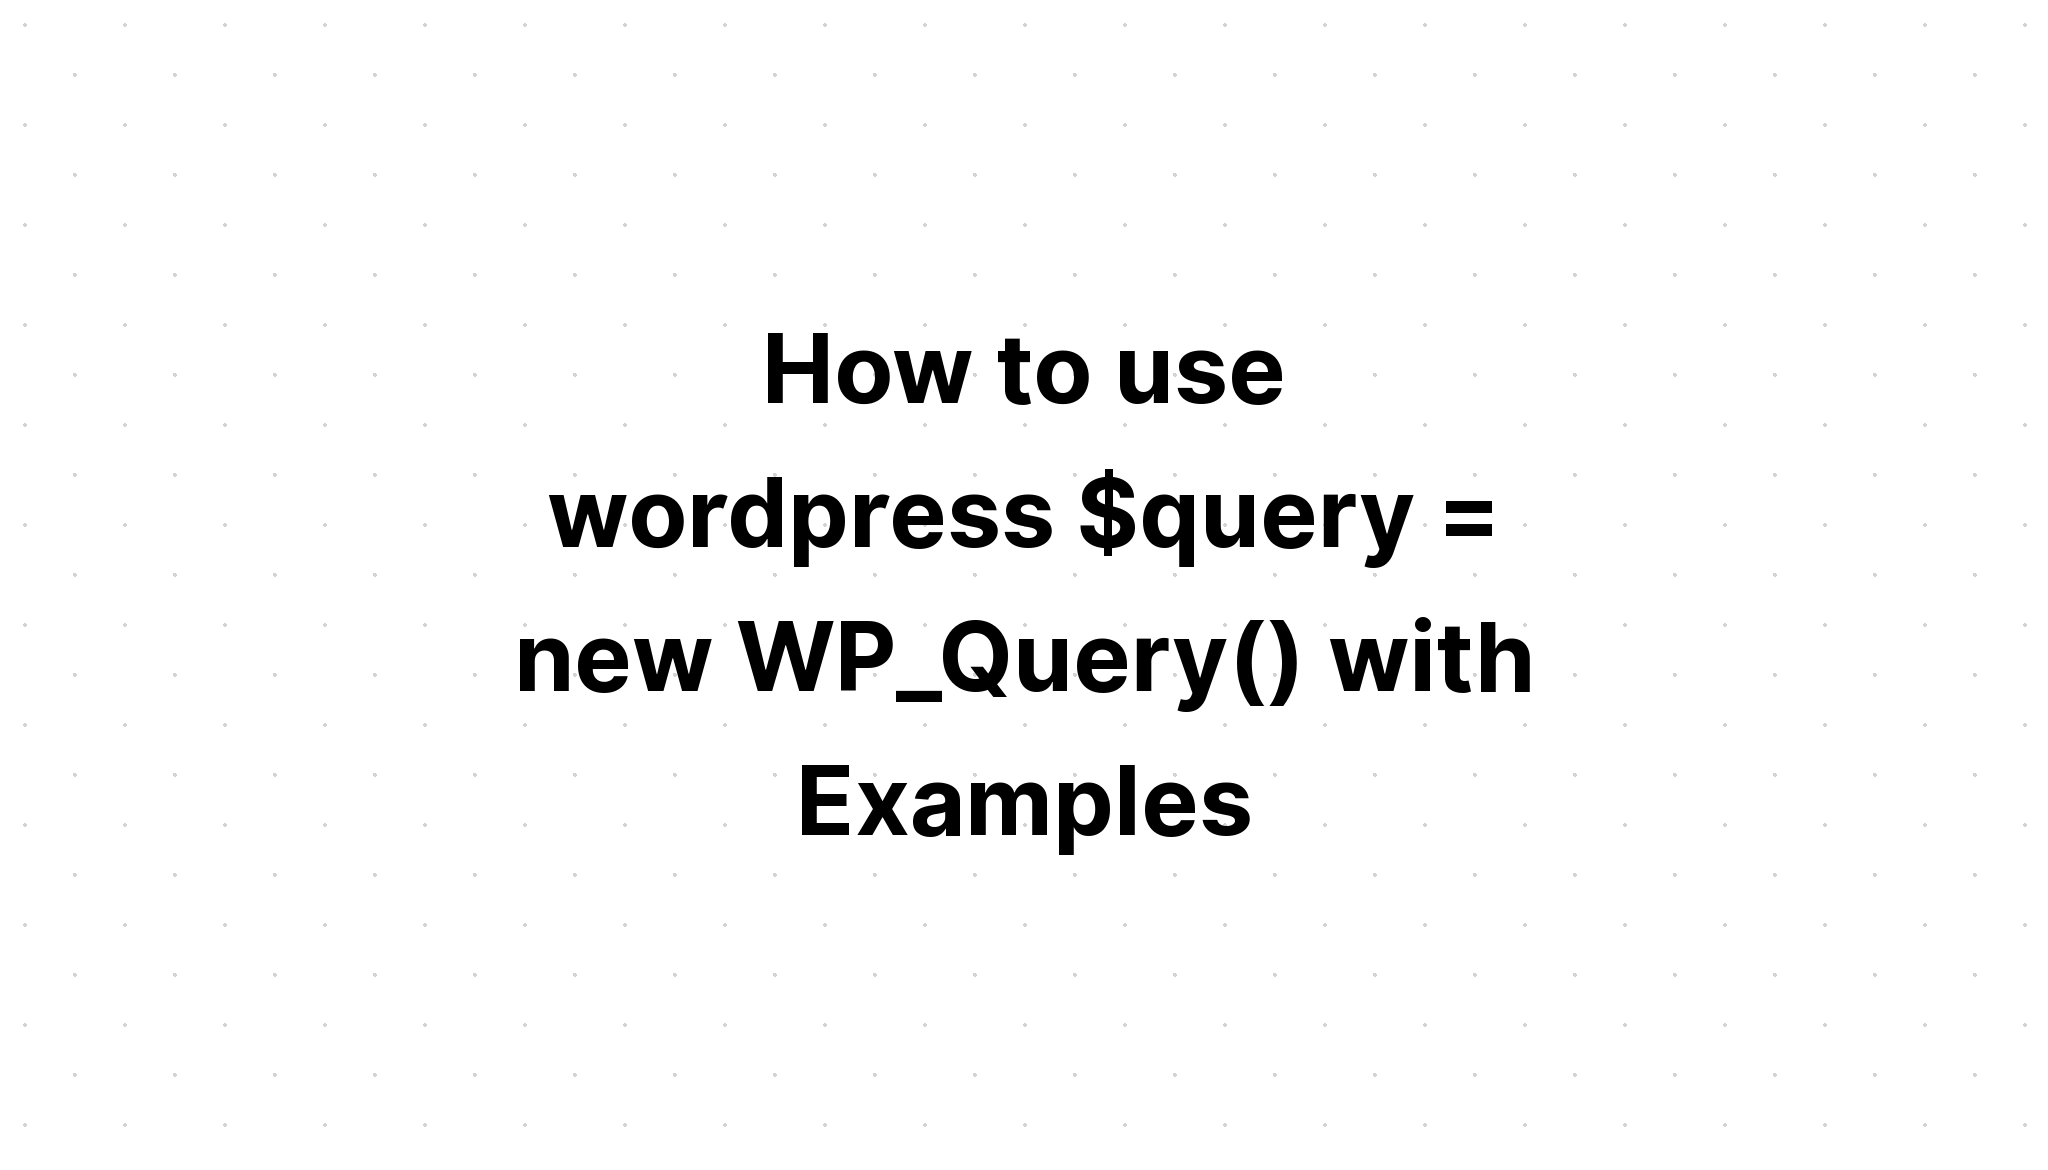 Cách sử dụng wordpress $query = new WP_Query() với các ví dụ